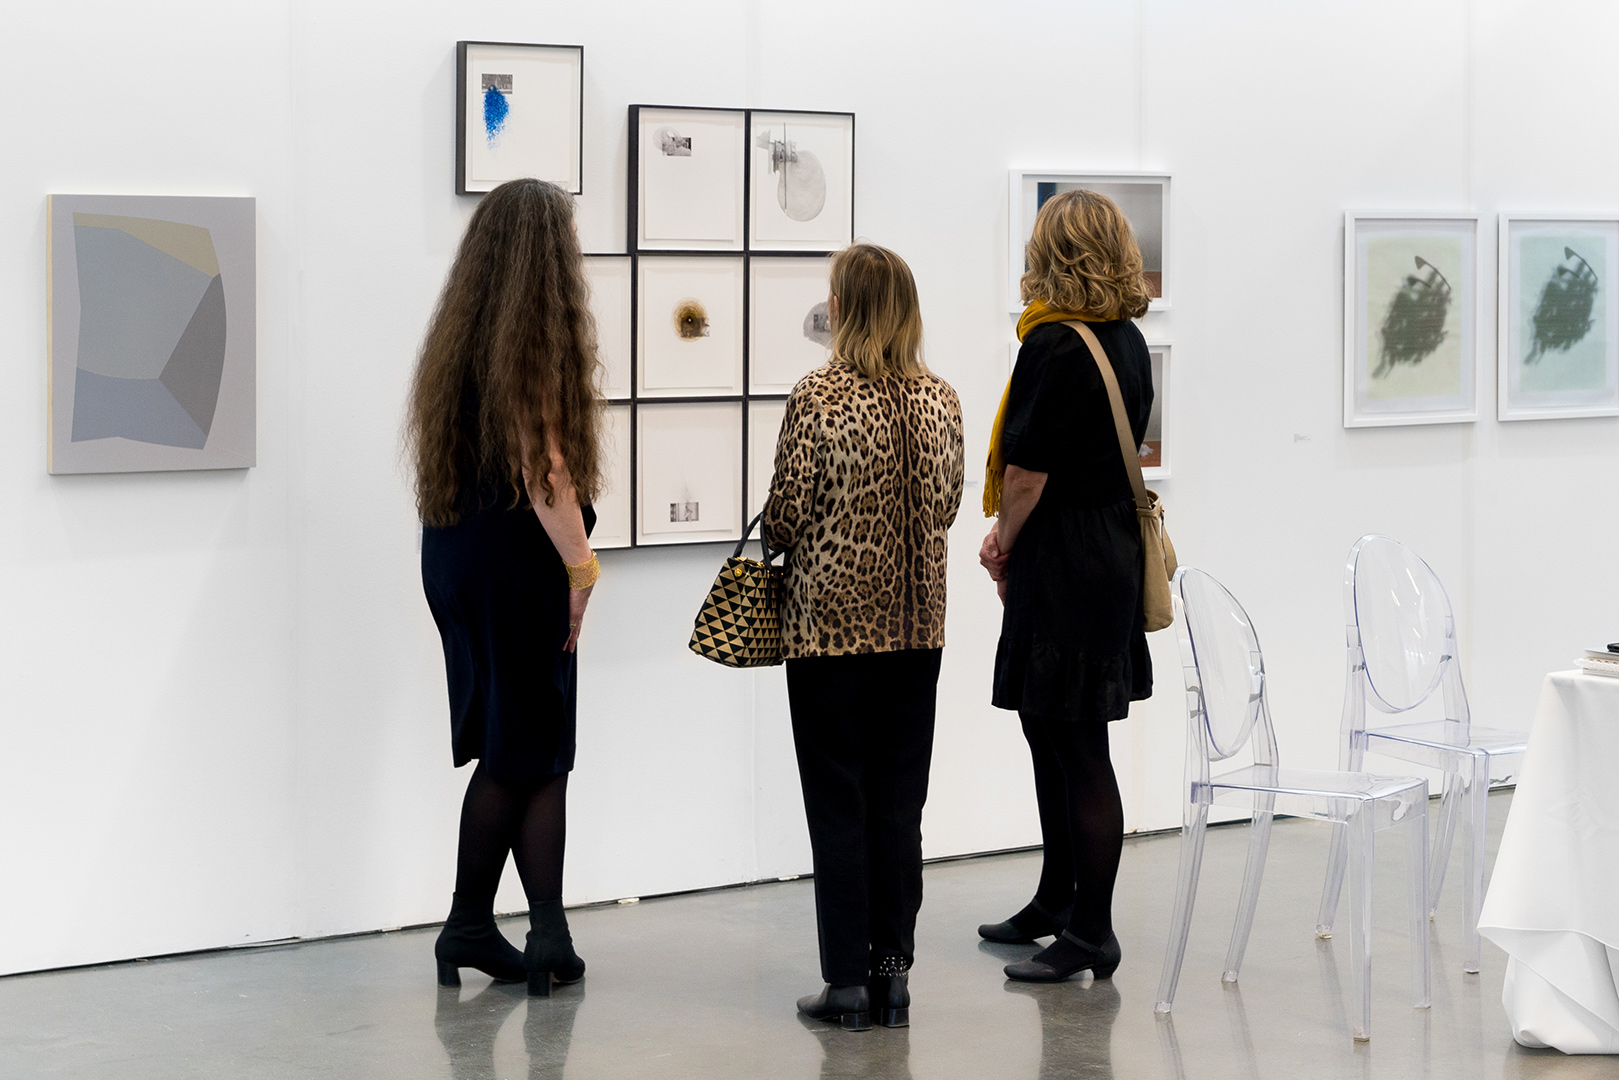 Trois femmes examinant les œuvres d'art exposées dans une galerie d'art.